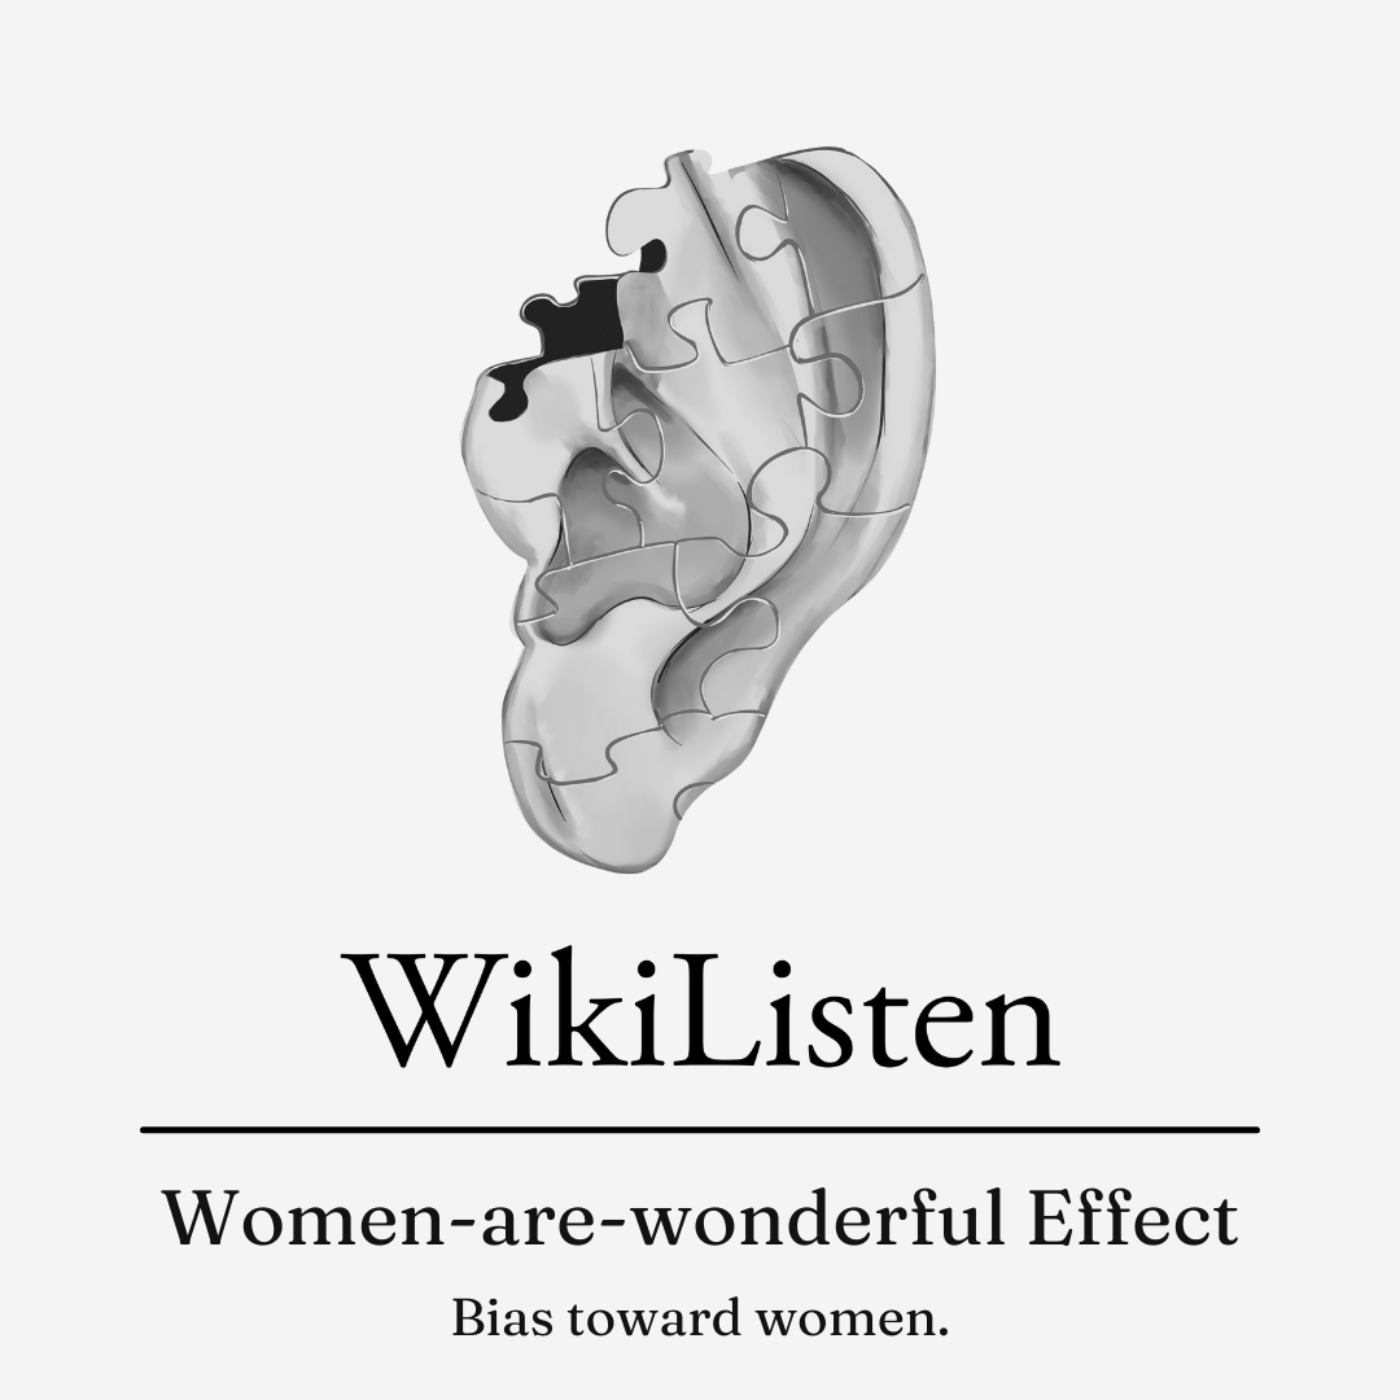 Women-are-wonderful Effect